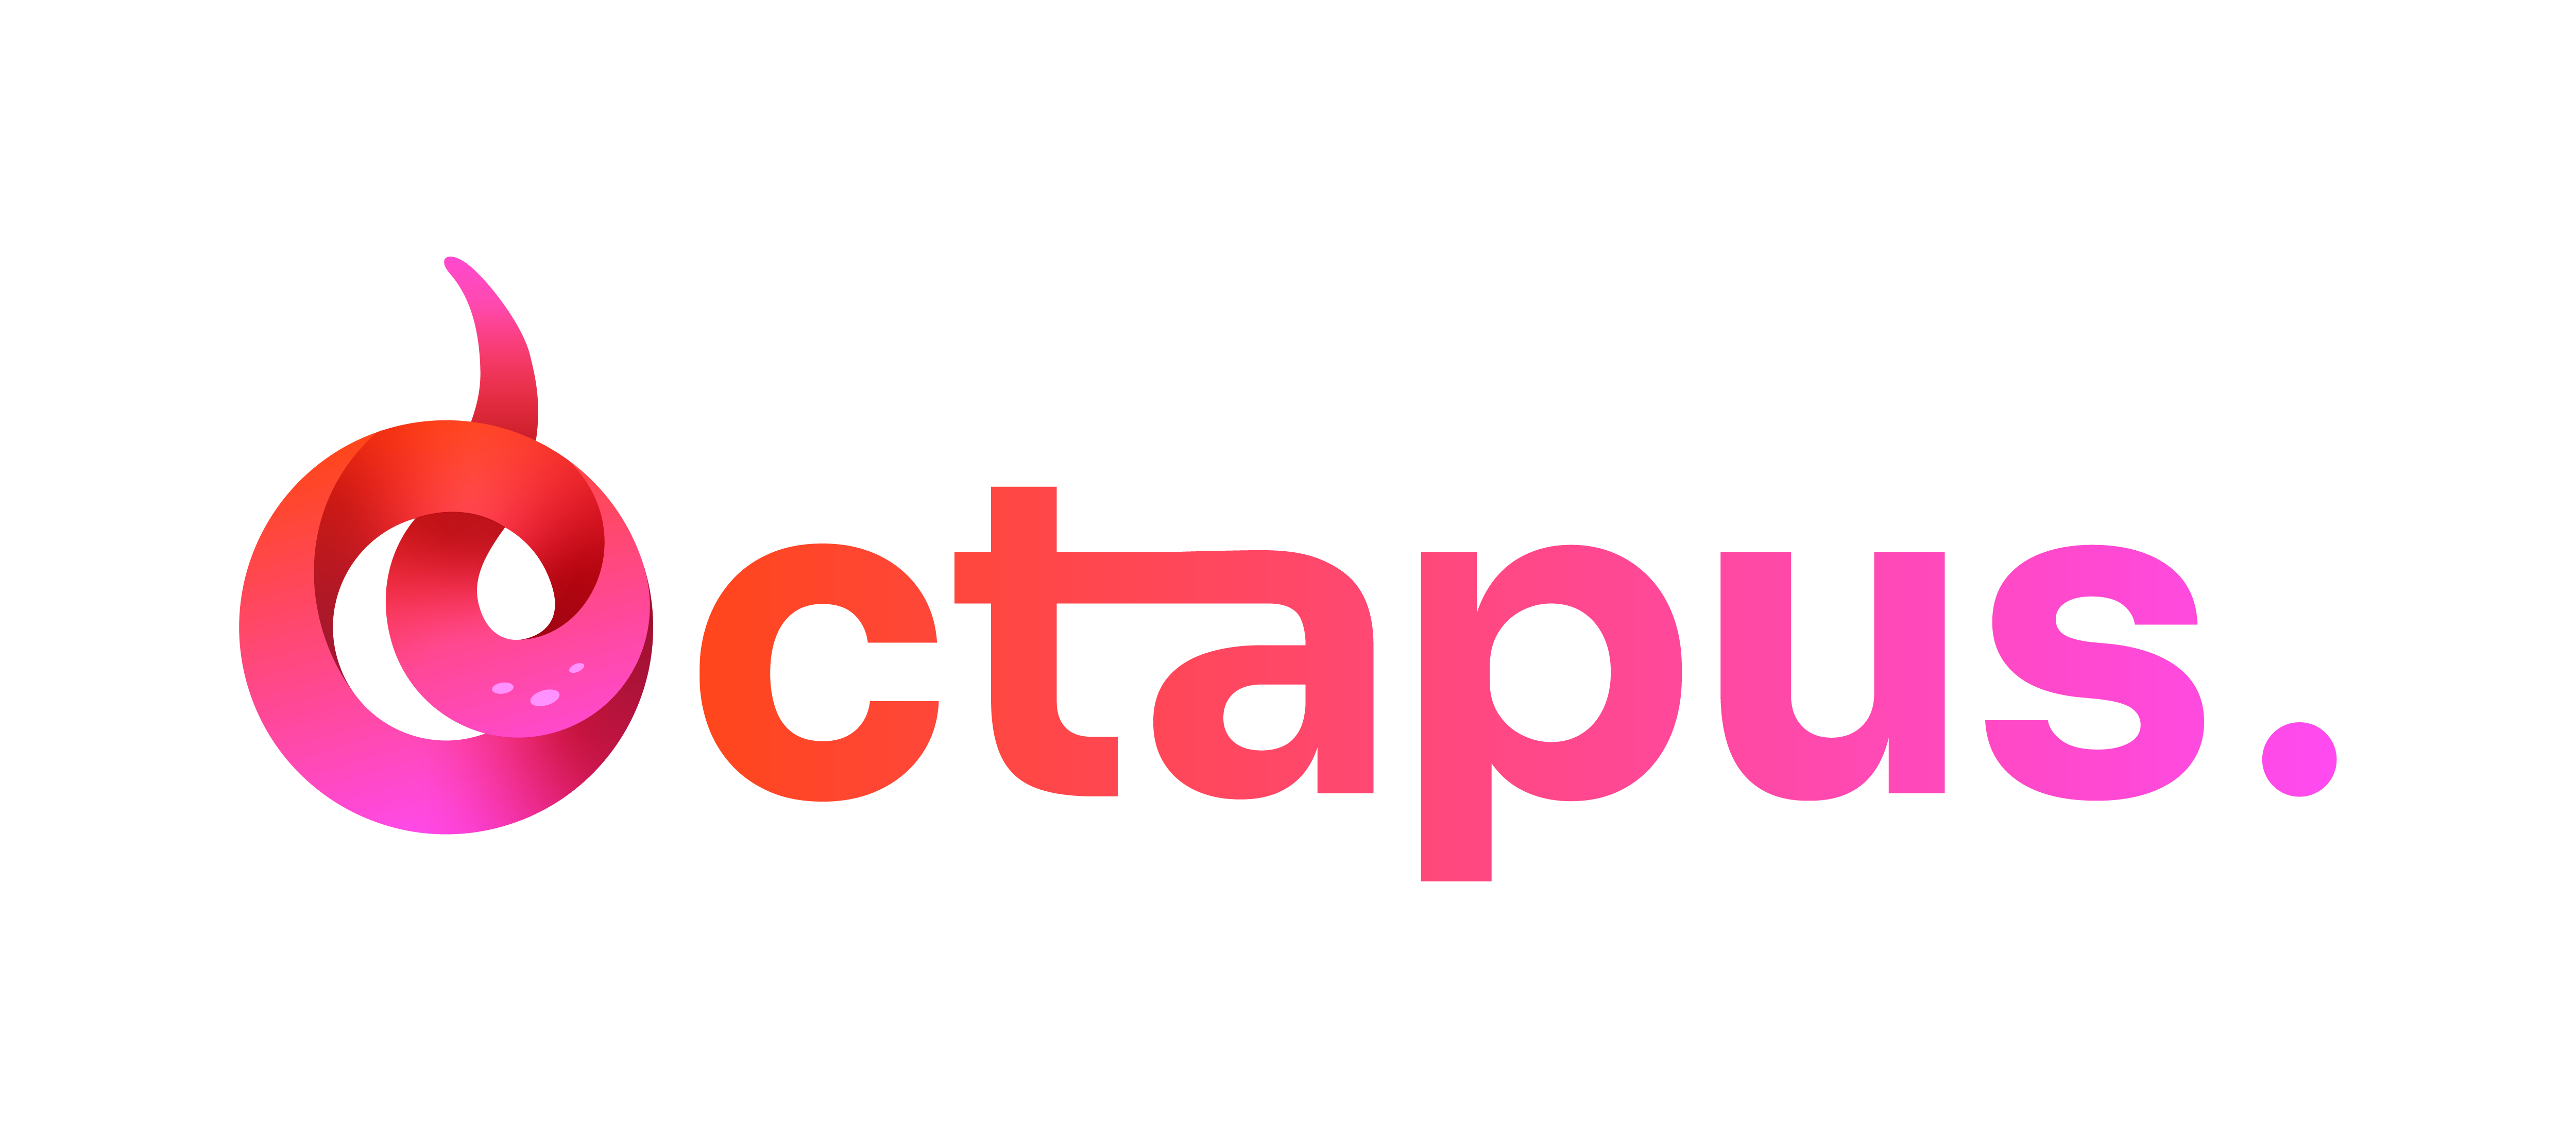 Octapus_Octapus-logo-A-color-1